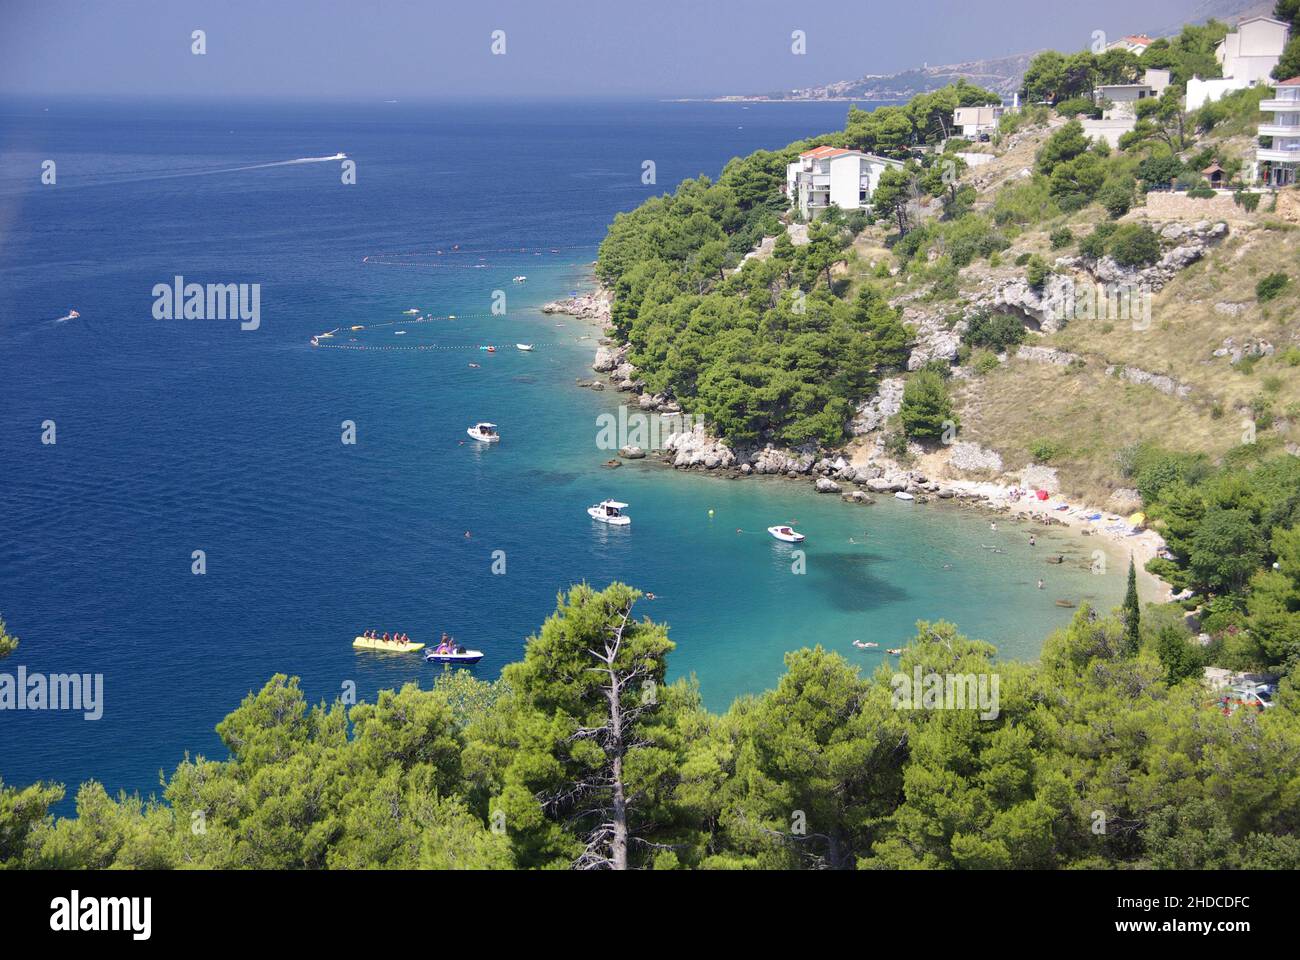 Bucht bei Stanici, Blick von der Küstenstraße, Omis, Dalmatien, Kroatien Stock Photo